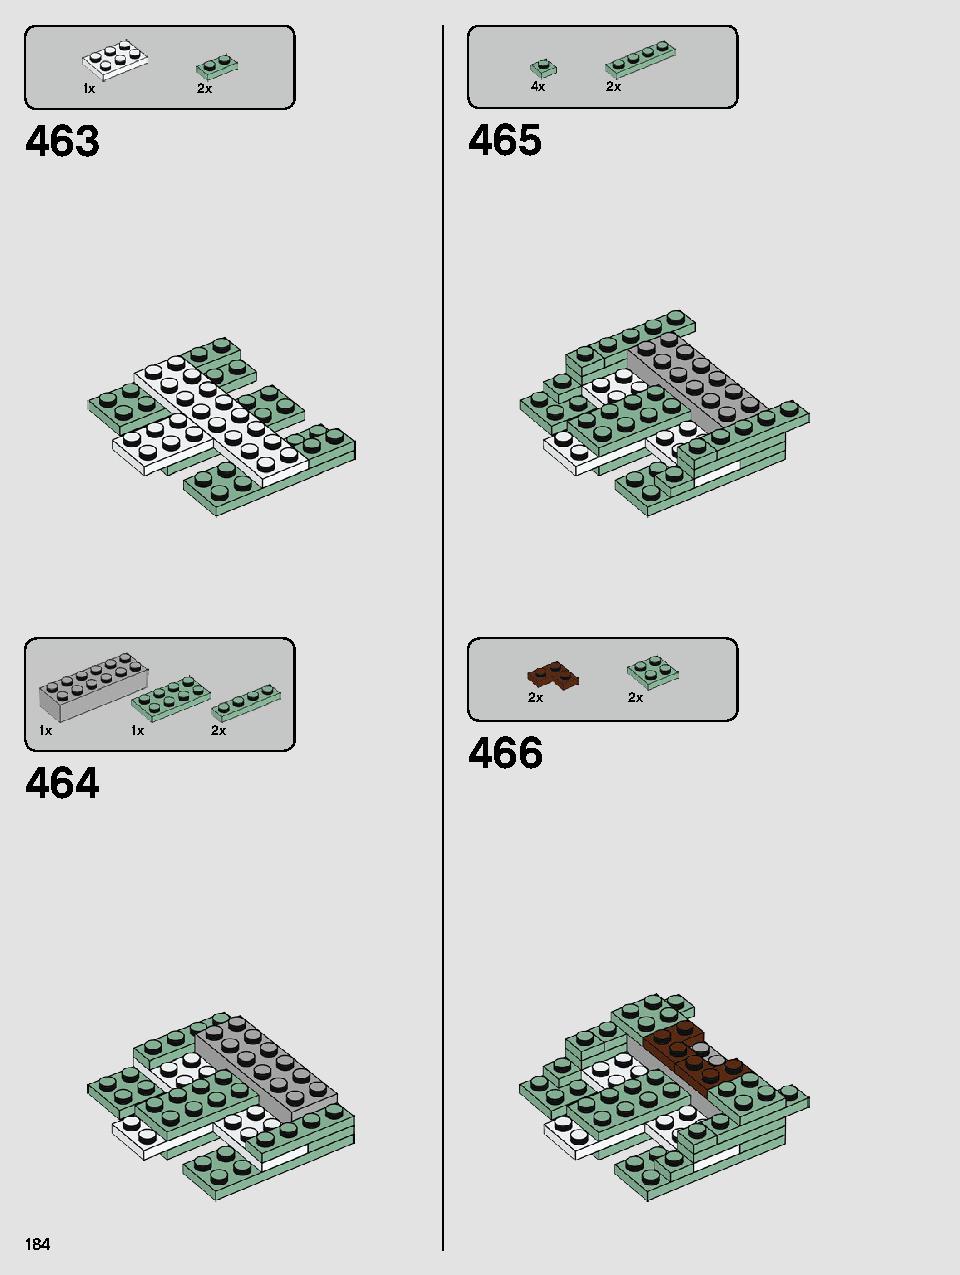 ヨーダ™ 75255 レゴの商品情報 レゴの説明書・組立方法 184 page